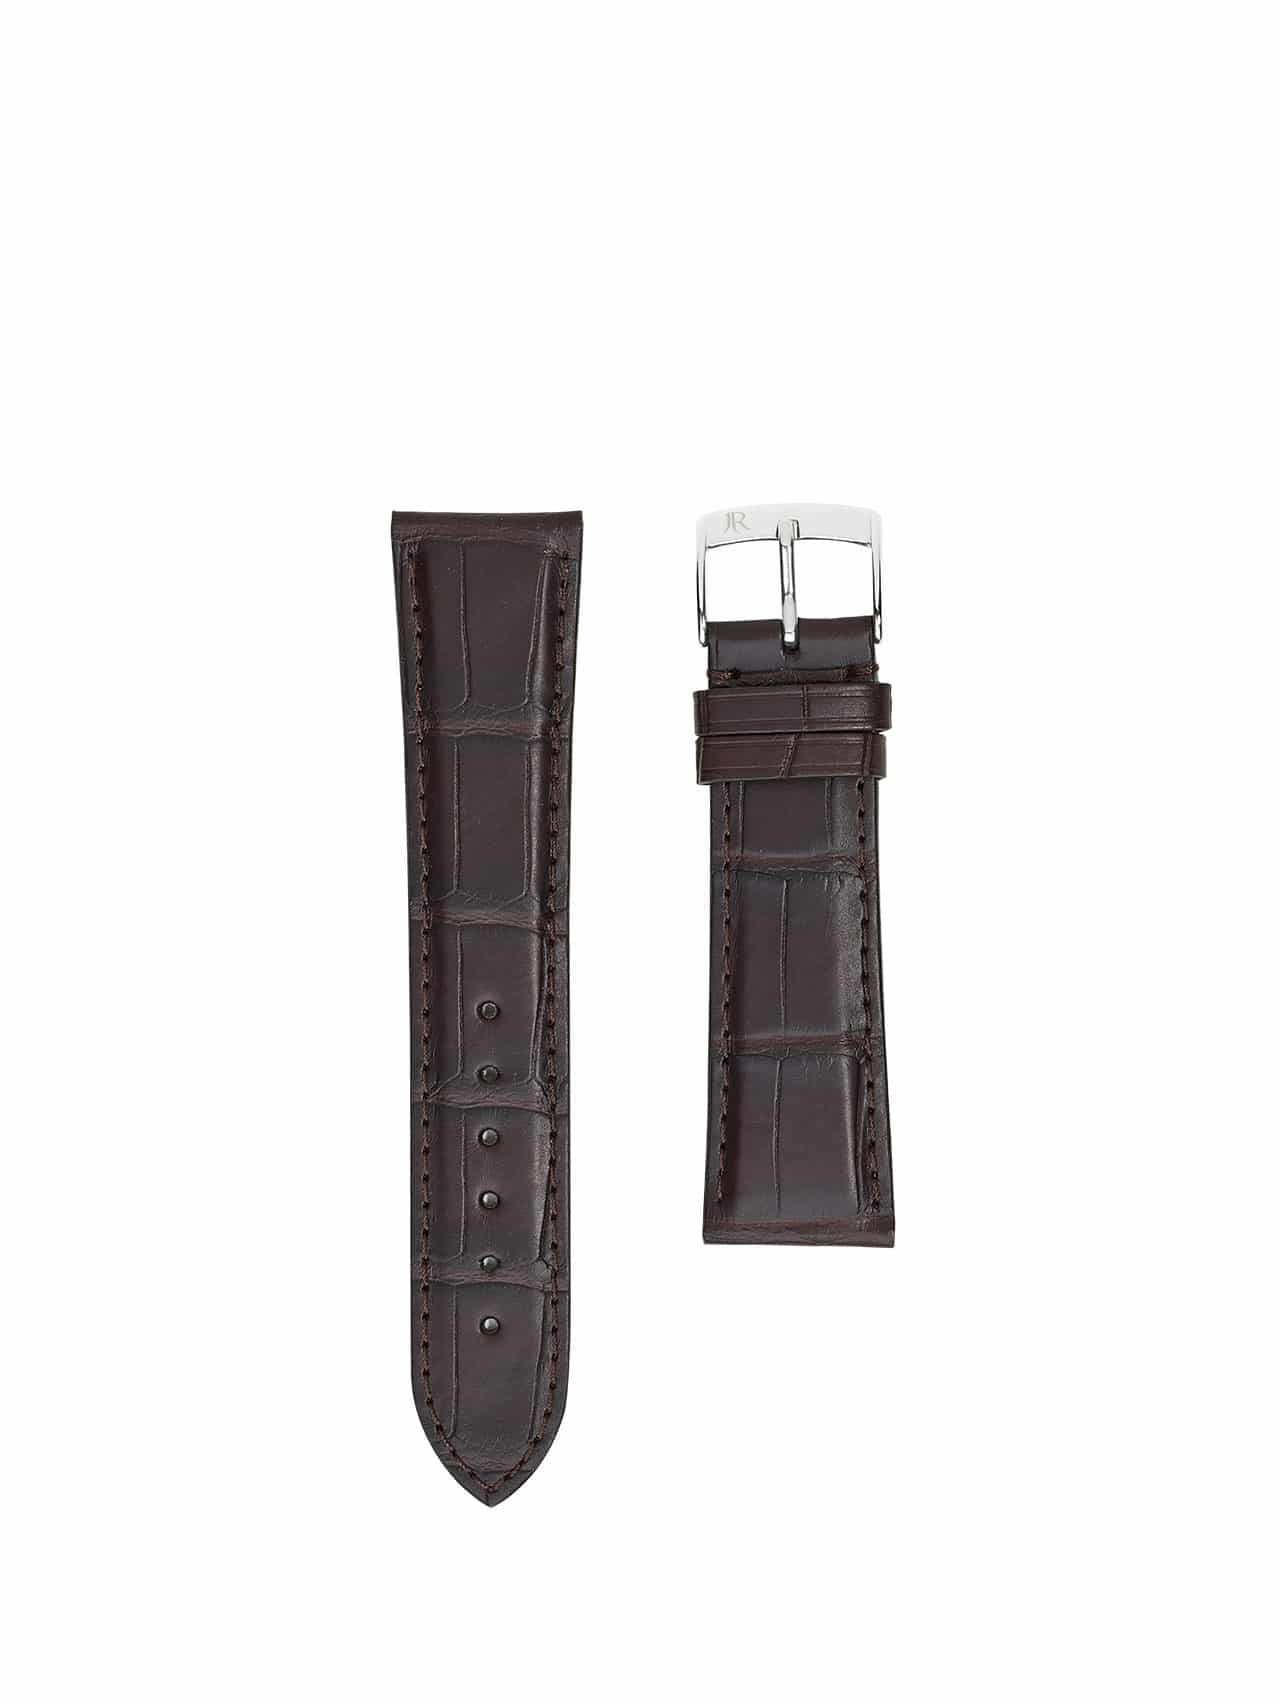 jean rousseau watch straps leather crocodile dark